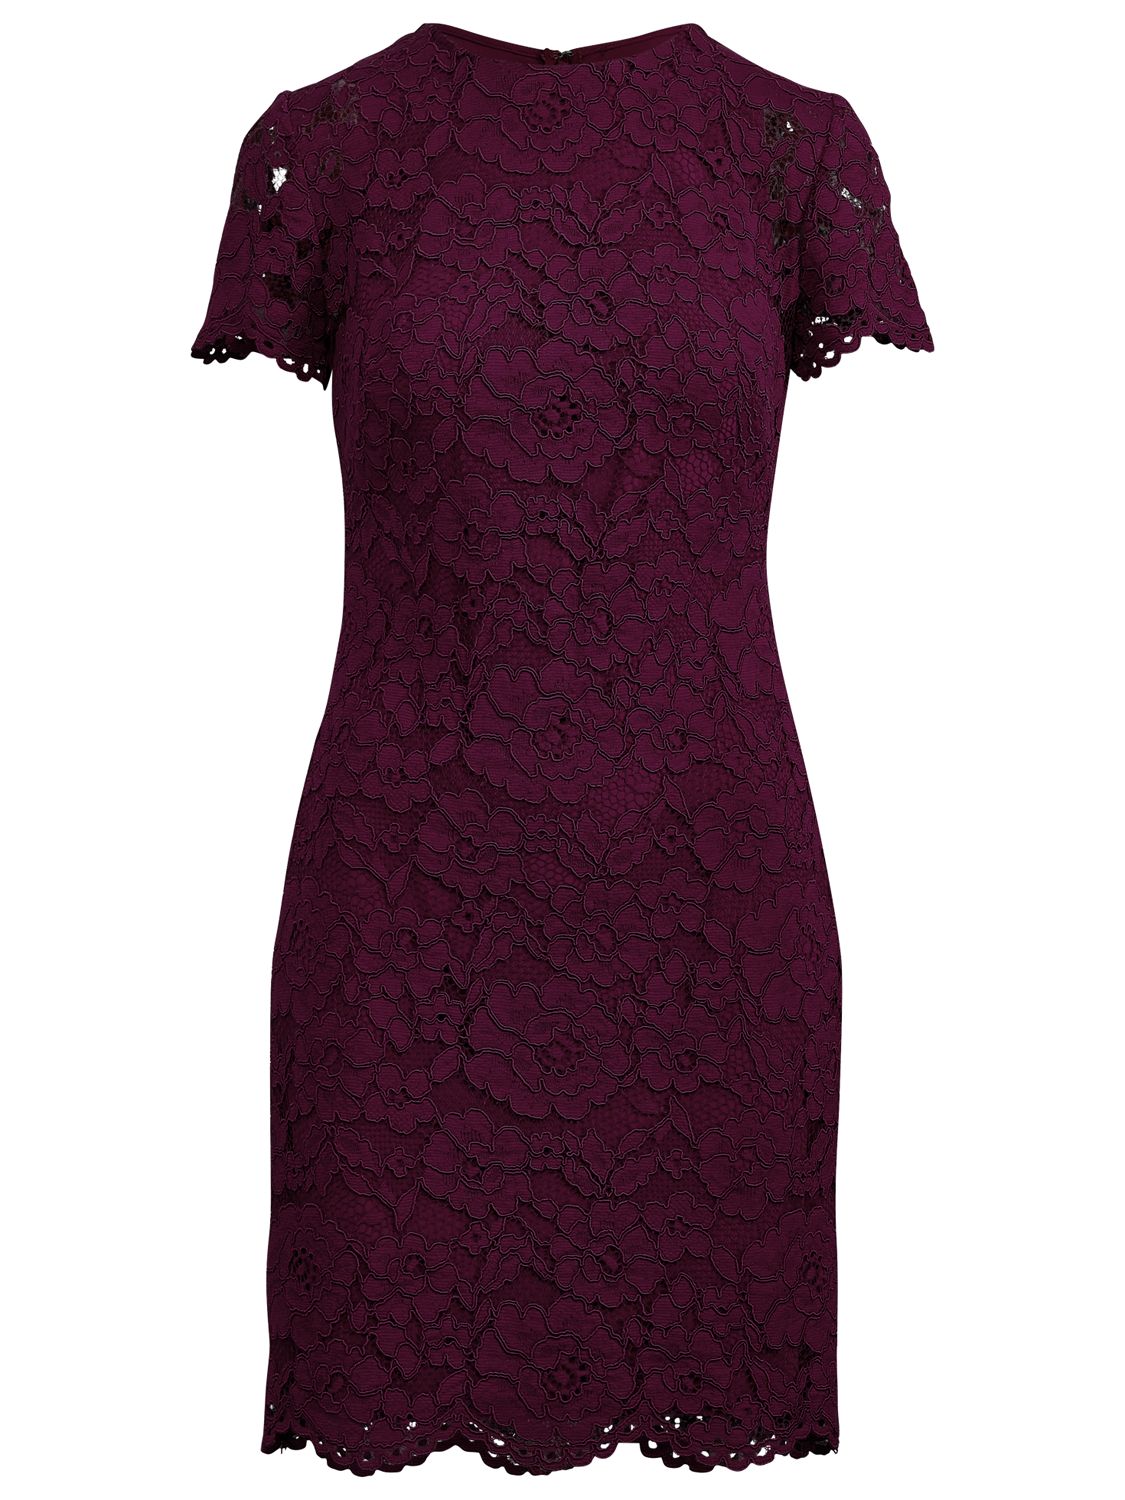 ralph lauren purple lace dress